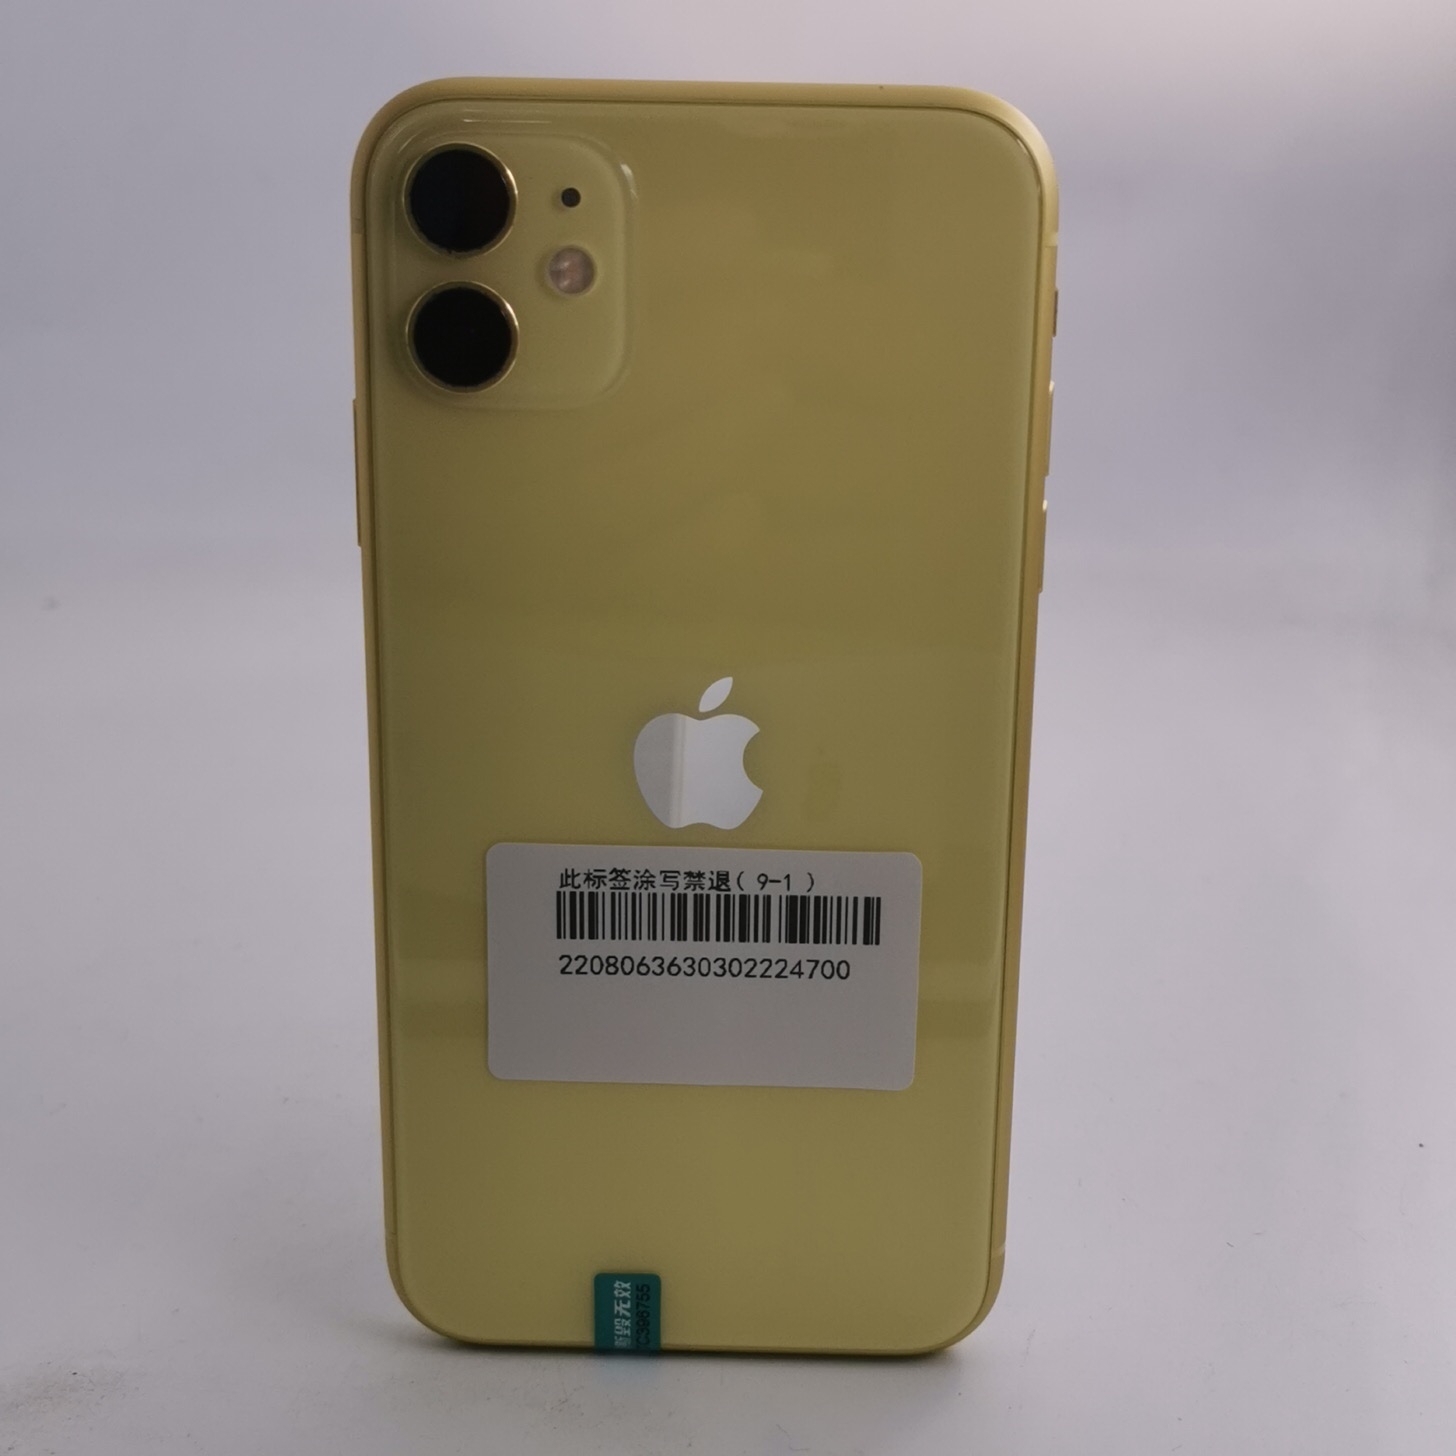 苹果【iPhone 11】4G全网通 黄色 128G 国行 9成新 